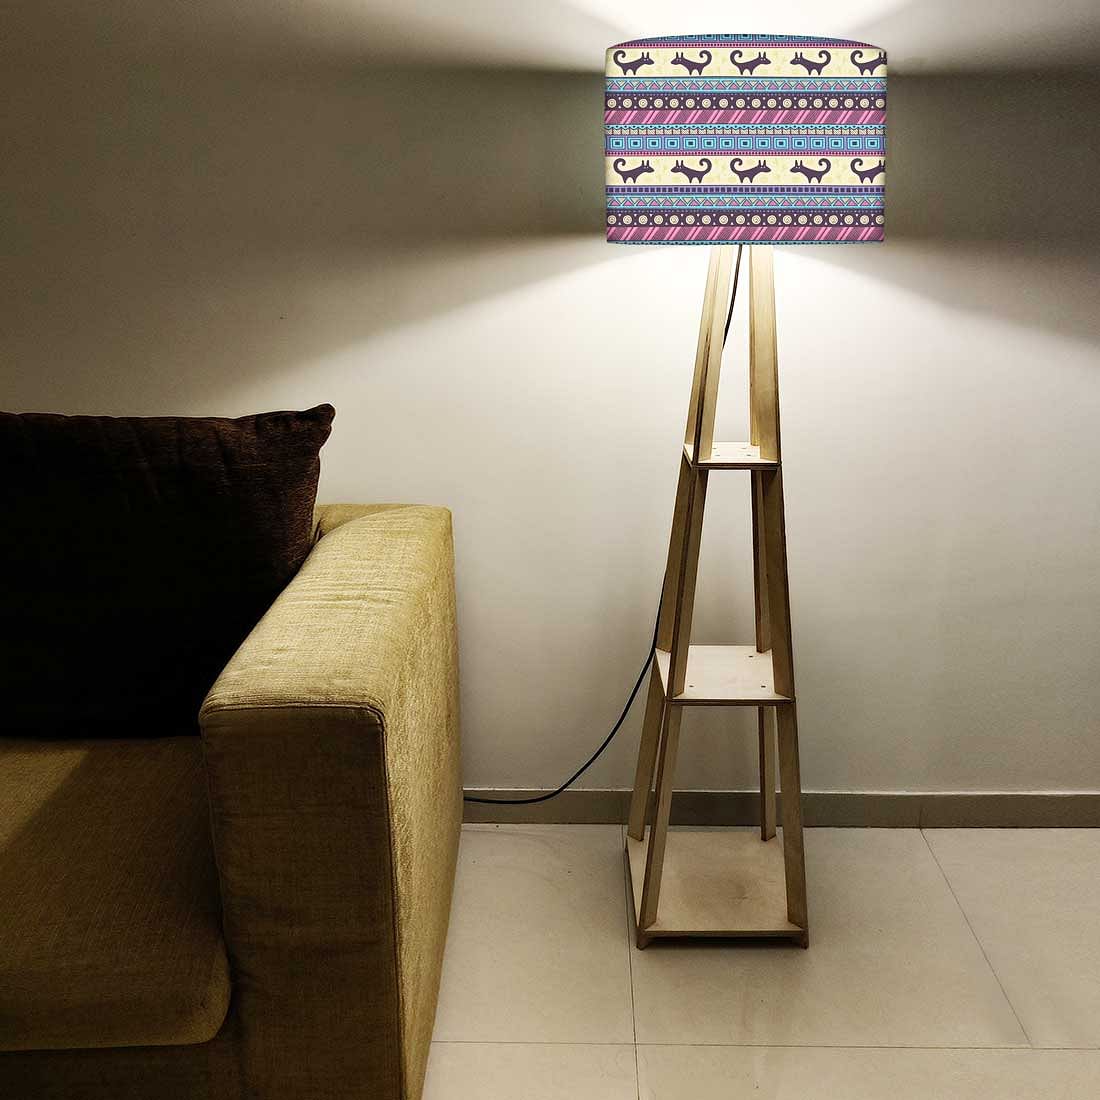 Floor Wooden Shelf Lamp for Bedroom  - Aztec Nutcase